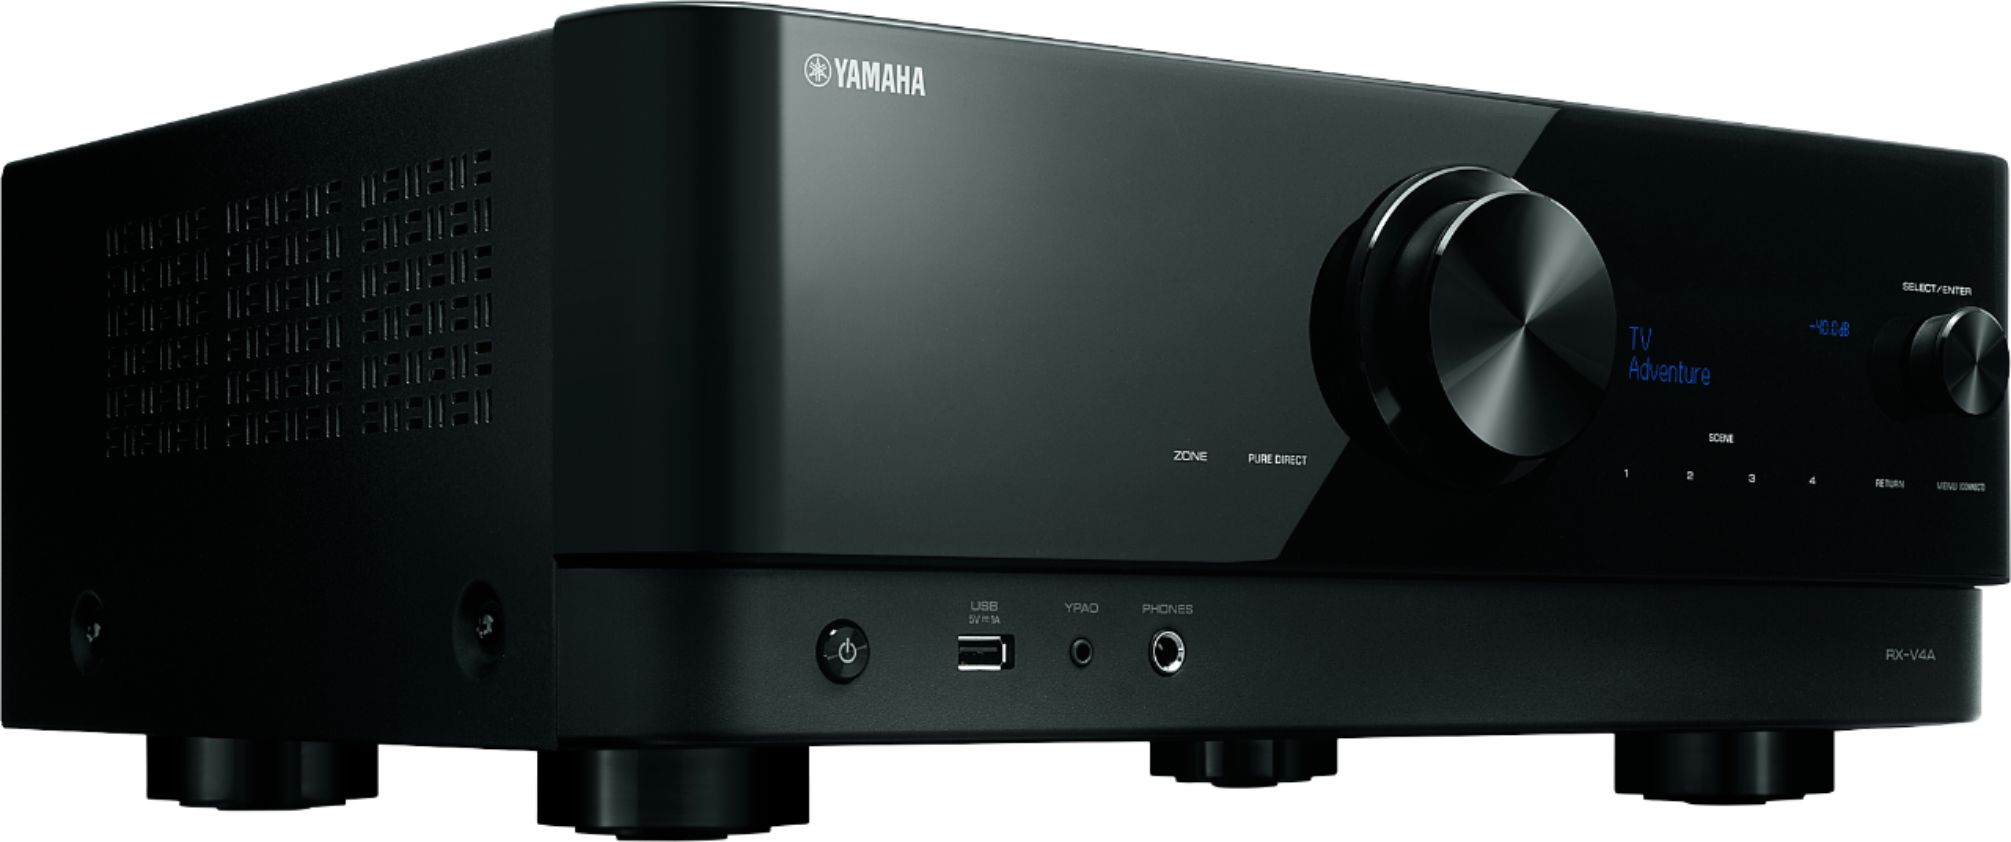 biologi muggen øjenvipper Yamaha RX-V4A 5.2-channel AV Receiver with 8K HDMI and MusicCast Black  RX-V4ABL - Best Buy